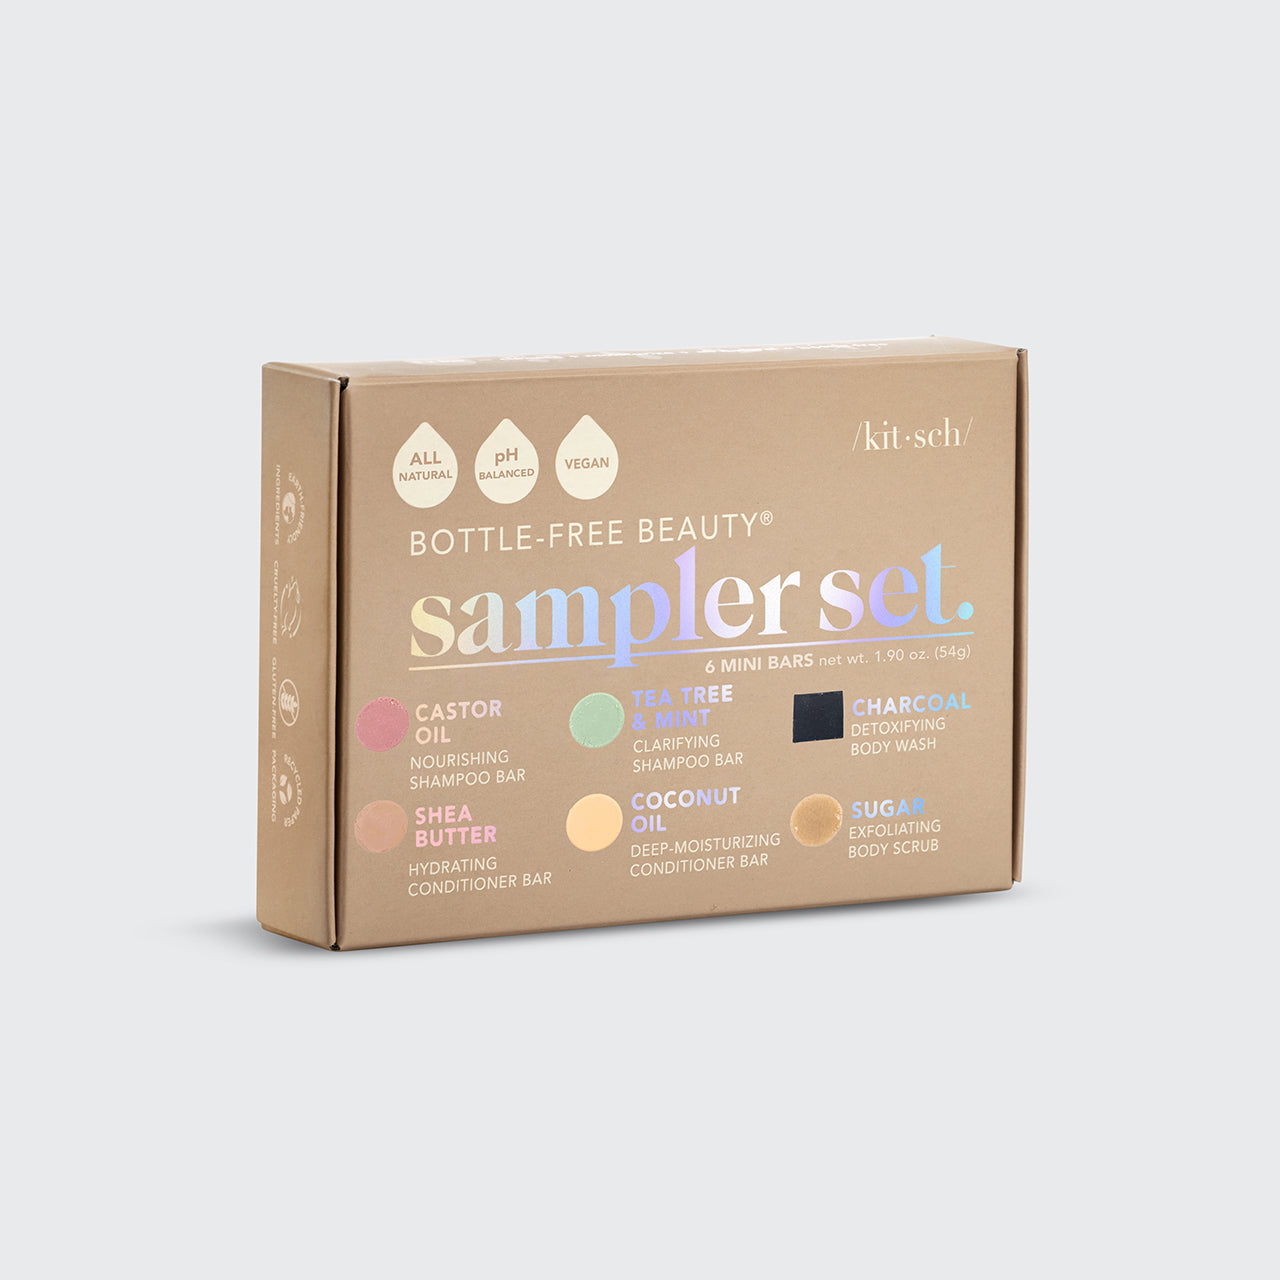 Shampoo & Body Wash 6 Stück Sampler